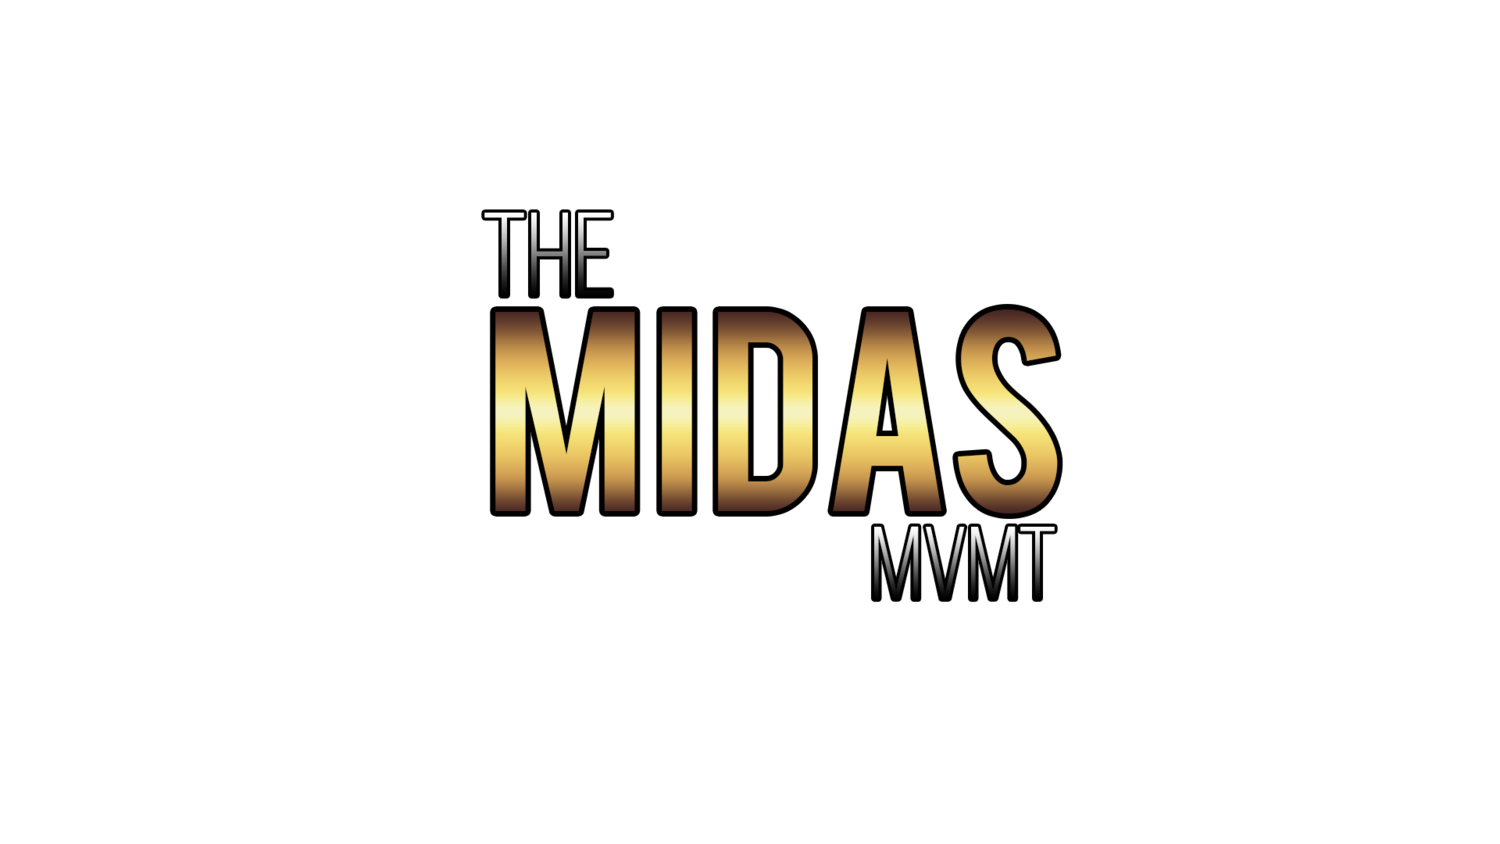 THE MIDAS MVMT